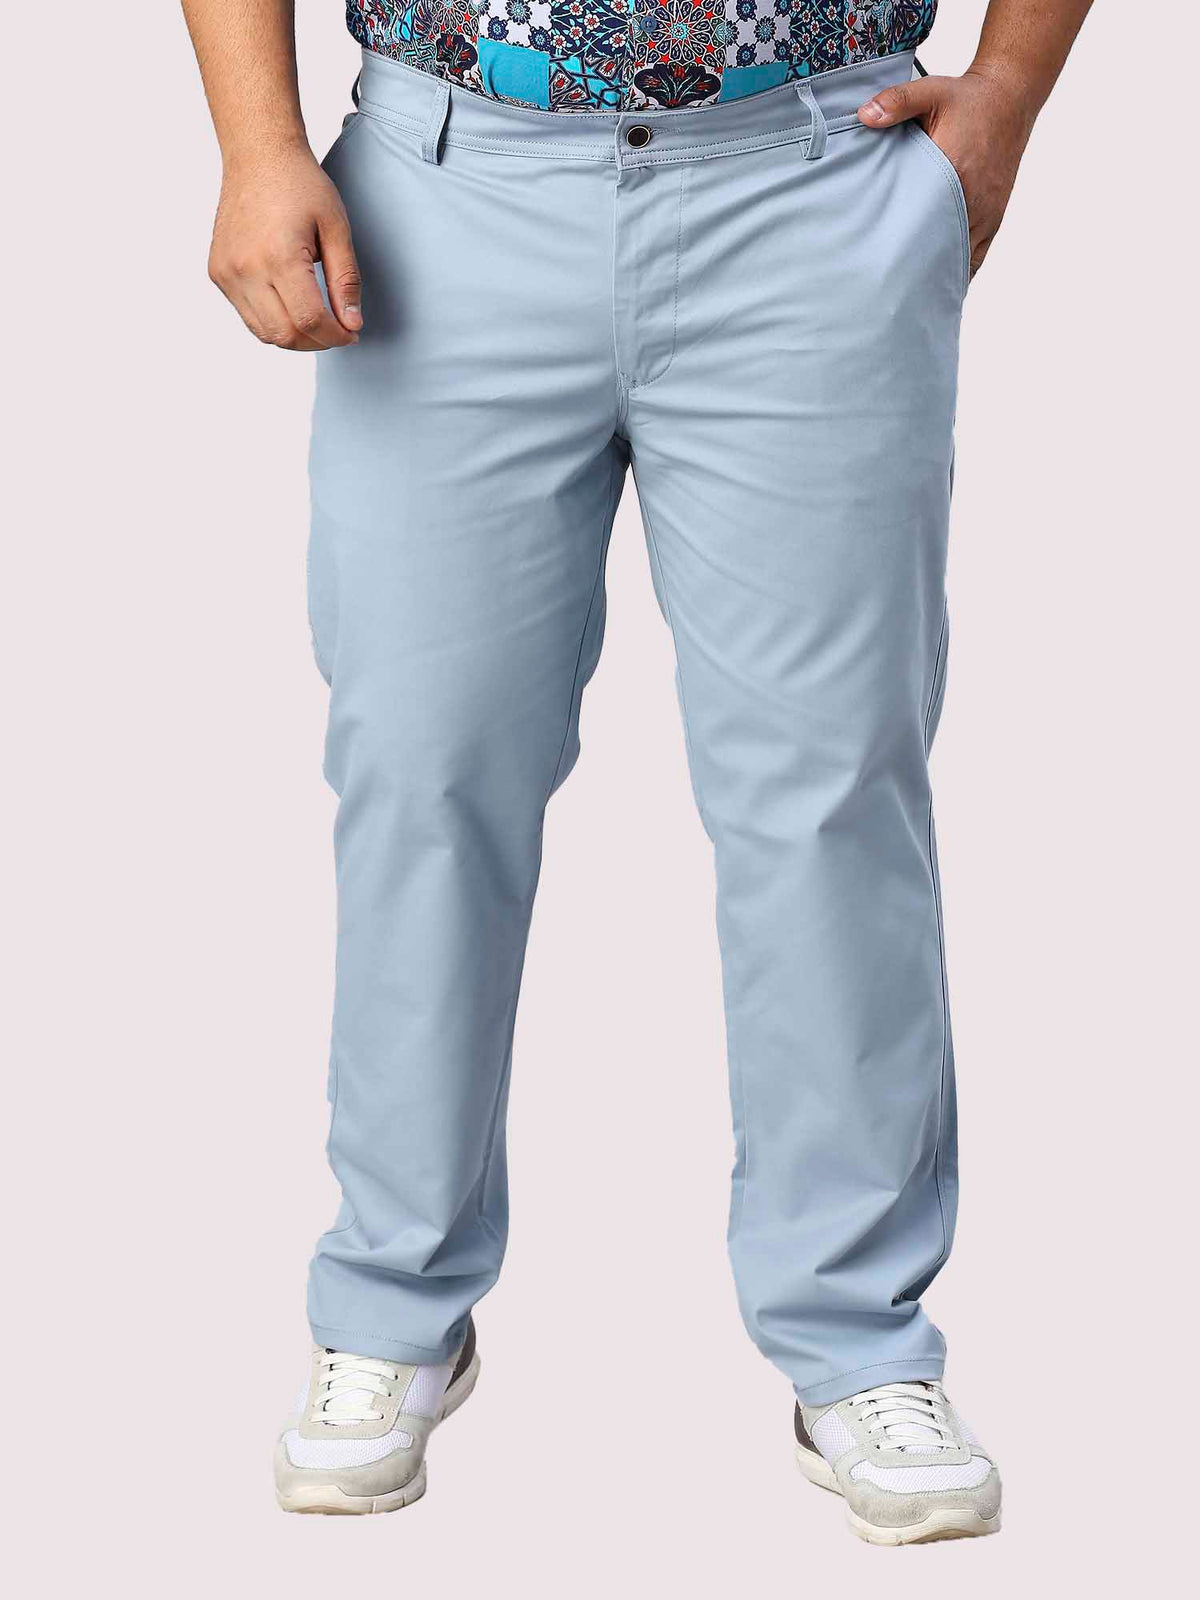 Aqua Blue Solid Cotton Trouser Men's Plus Size